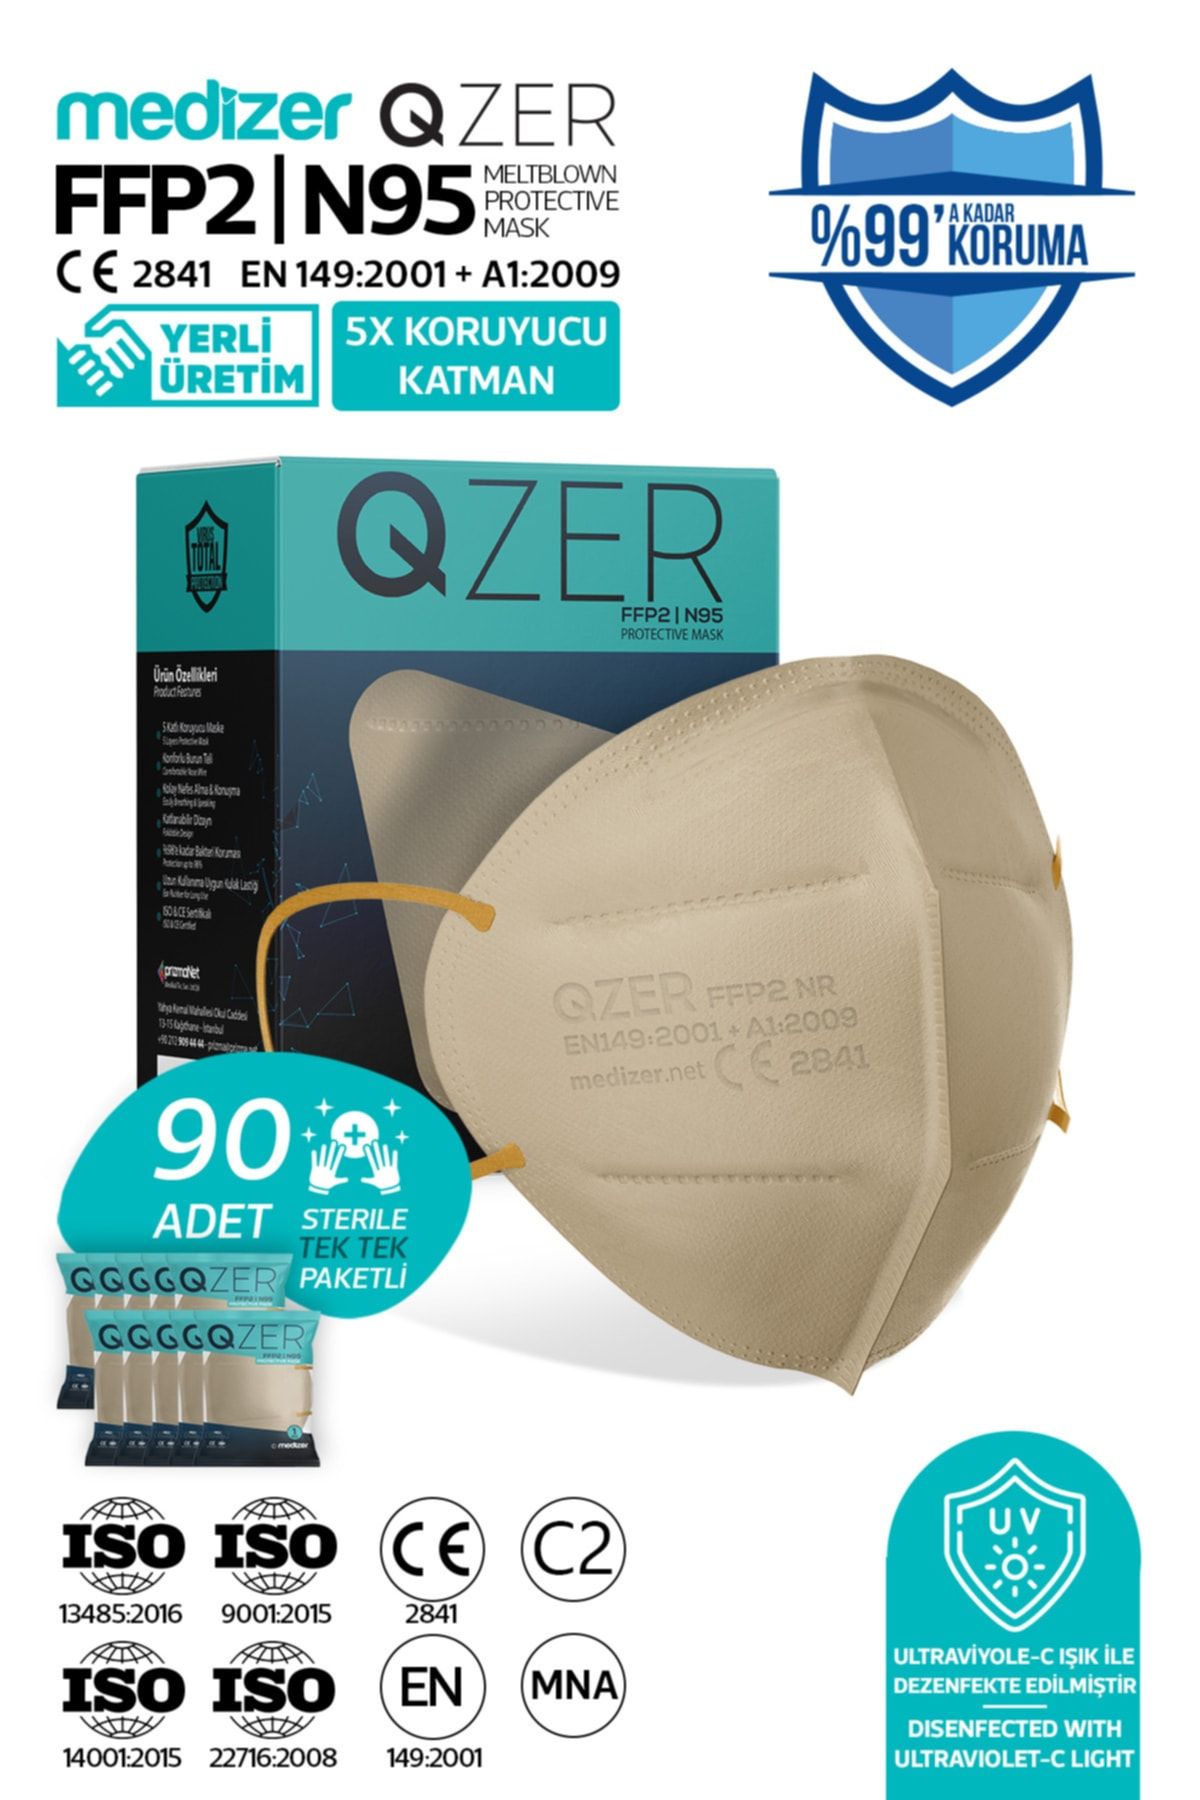 Medizer Qzer 90 Adet Krem Renk 5 Katmanlı N95 Maske